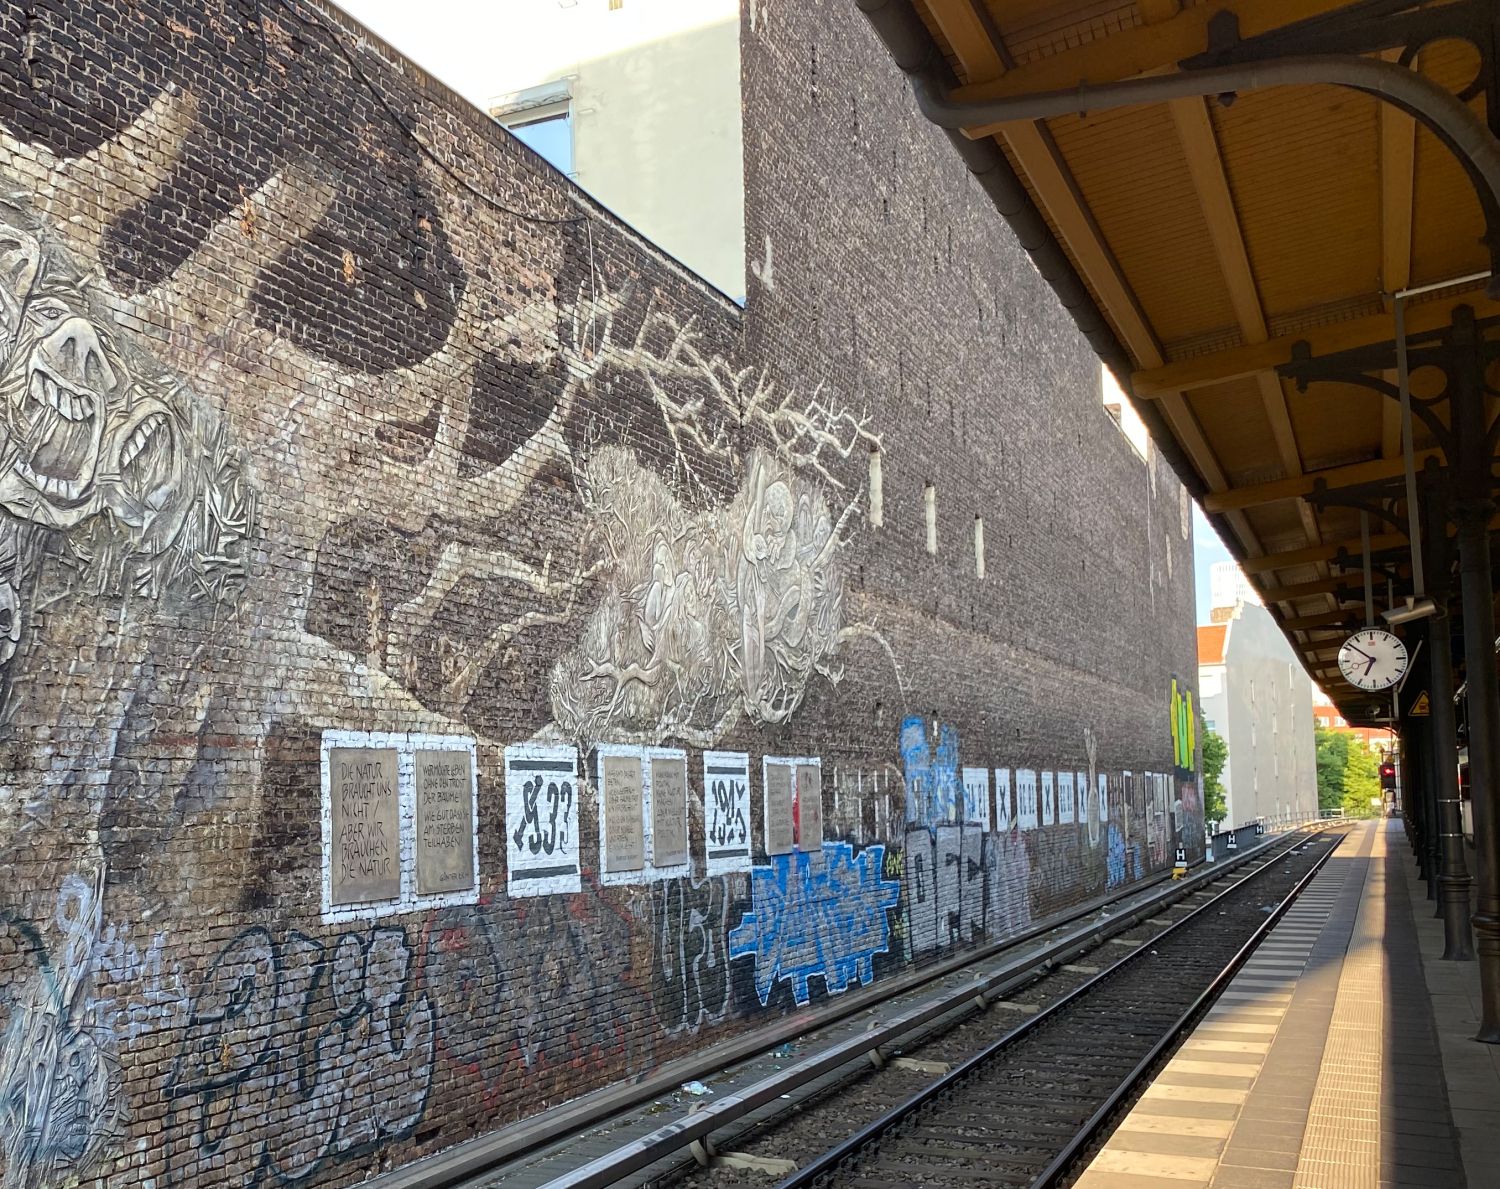 S-Bahnhof Savignyplatz mit Wandbild "Weltbaum" von Ben Wagin und anderen